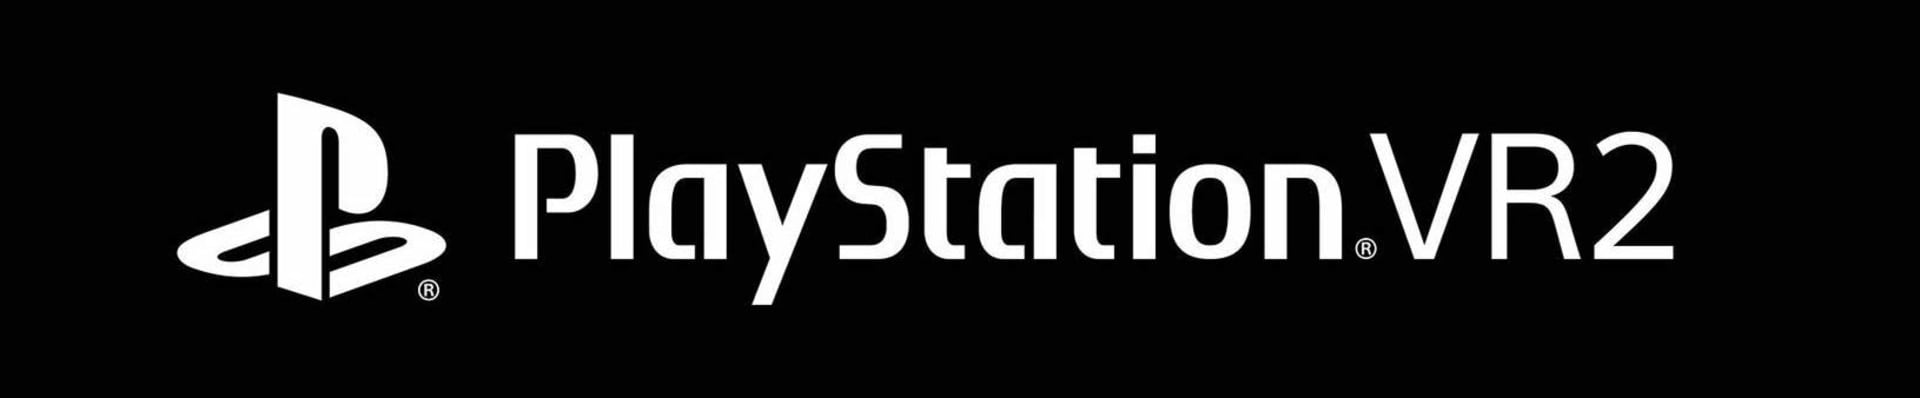 Logo PlayStation VR2